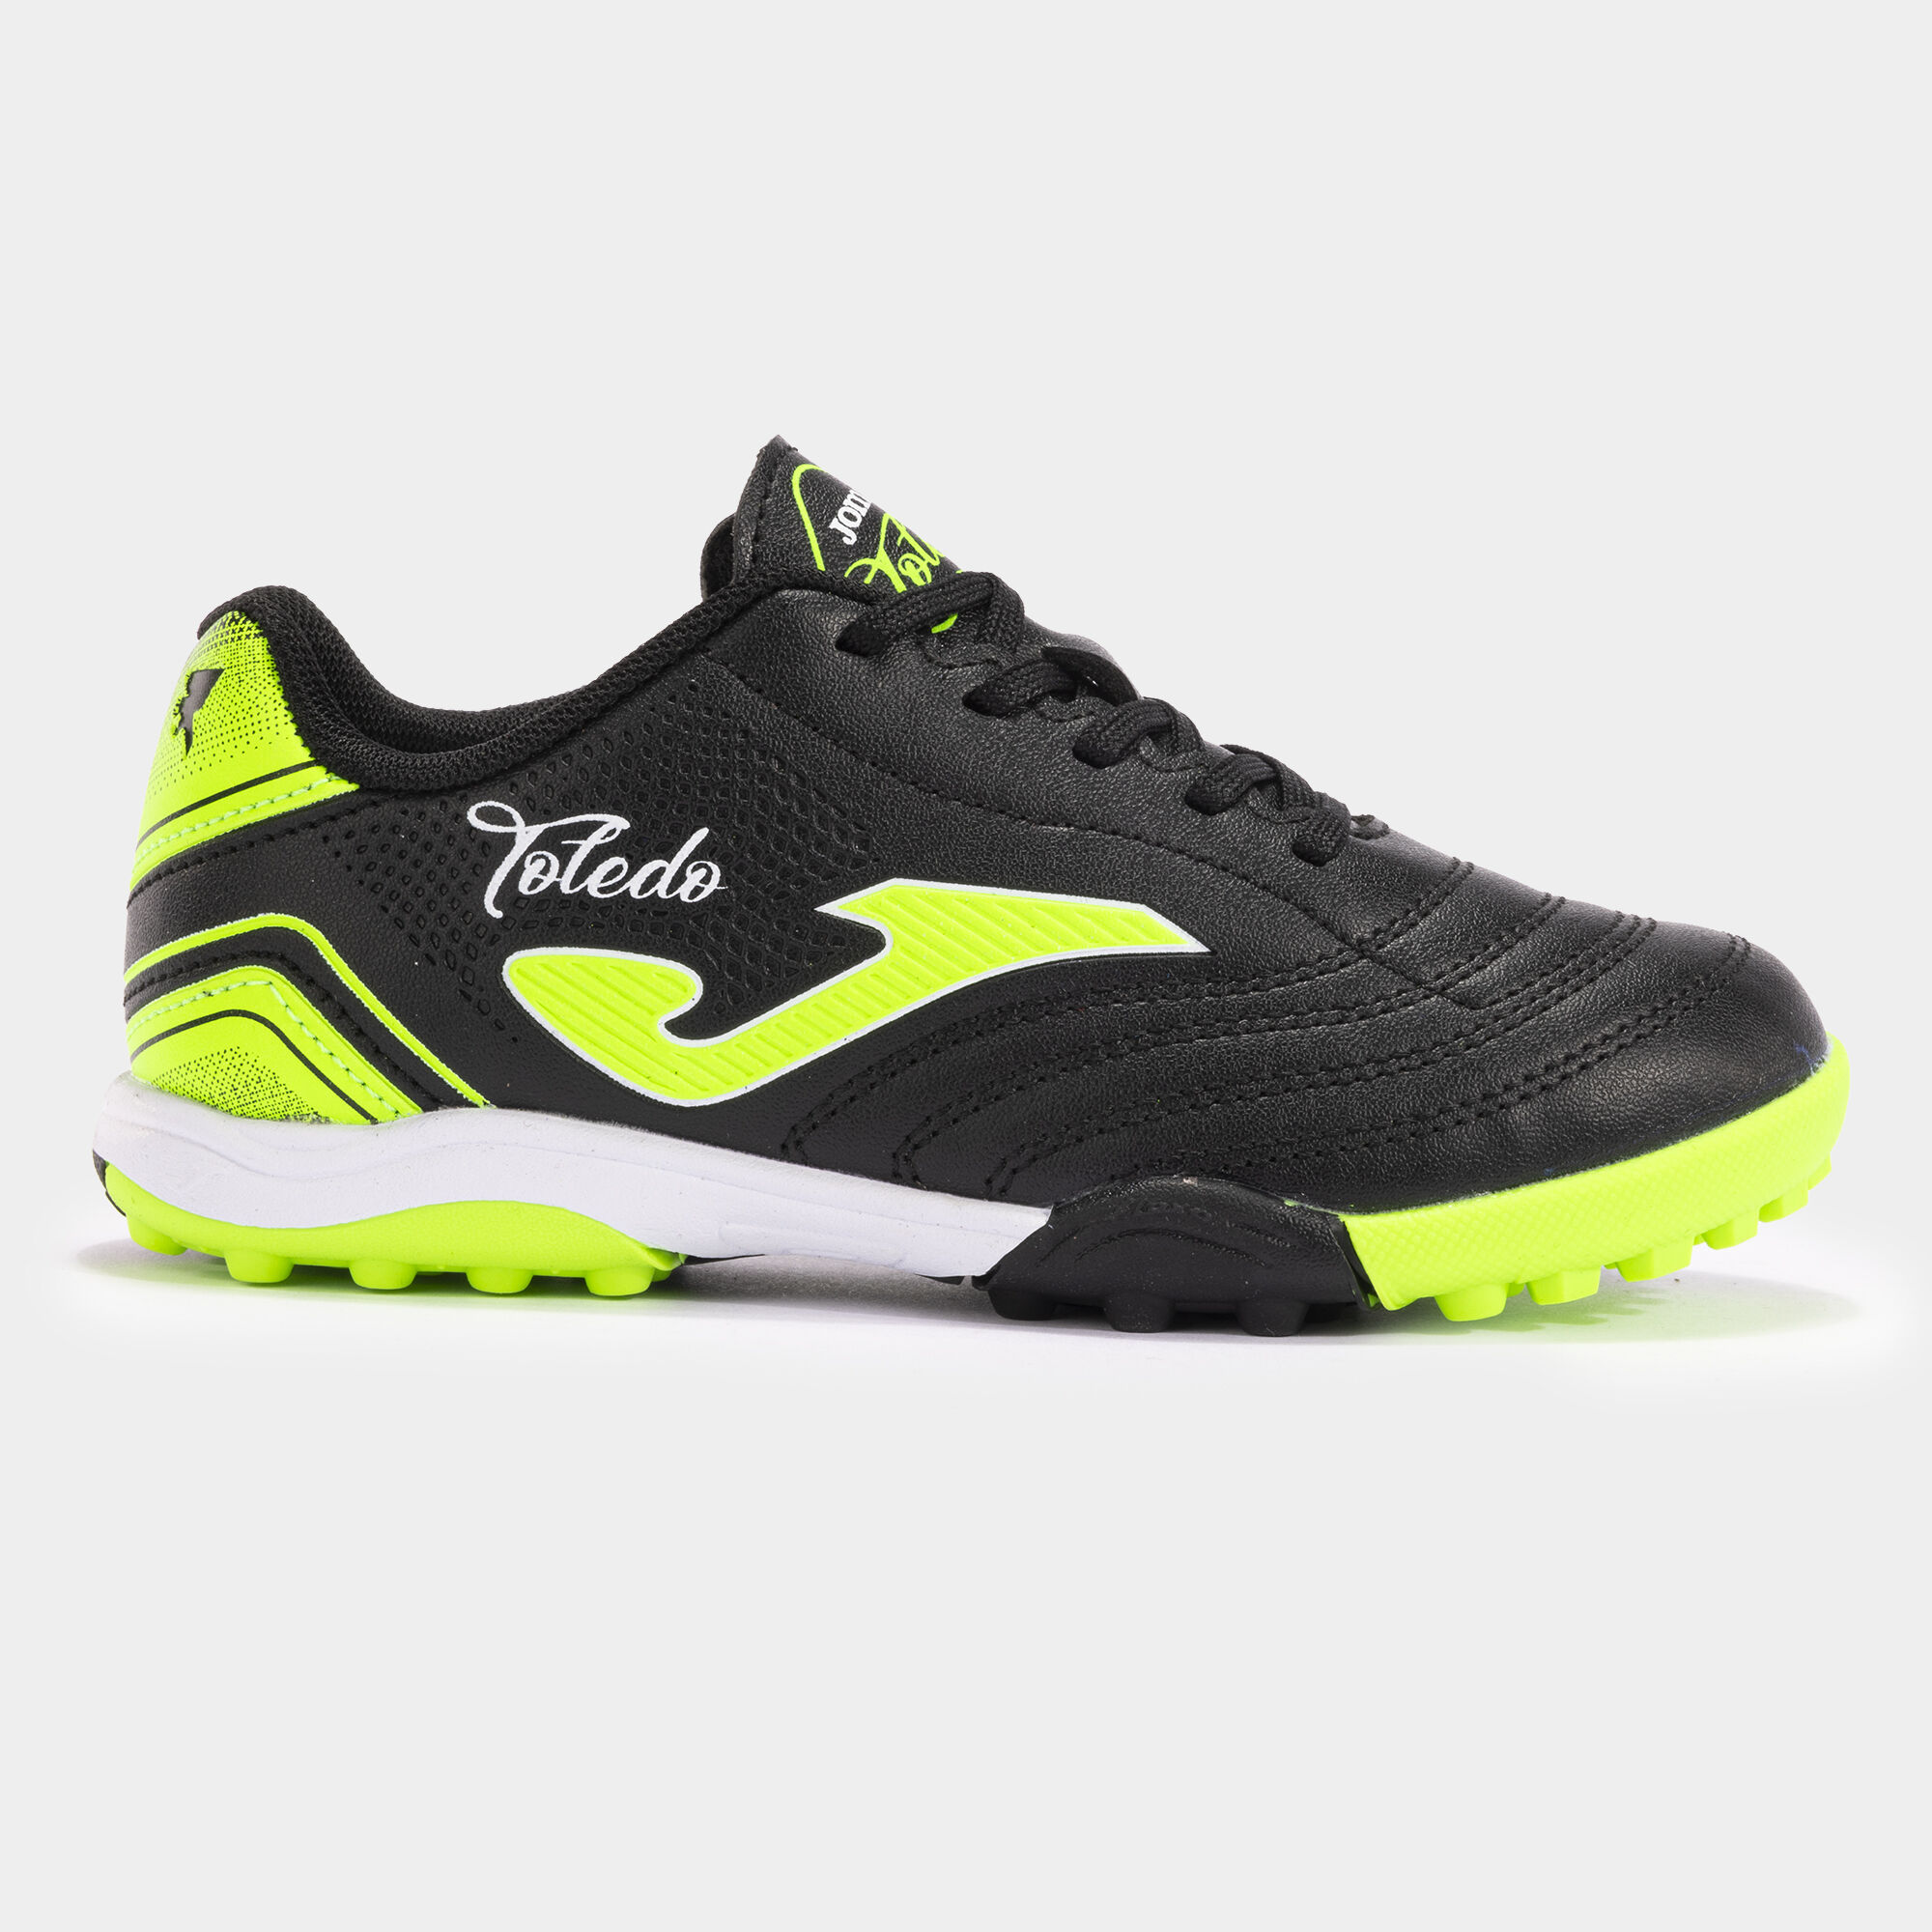 Buty piłkarskie Toledo Jr 24 syntetyczna nawierzchnia turf junior czarny fluorescencyjny zielony